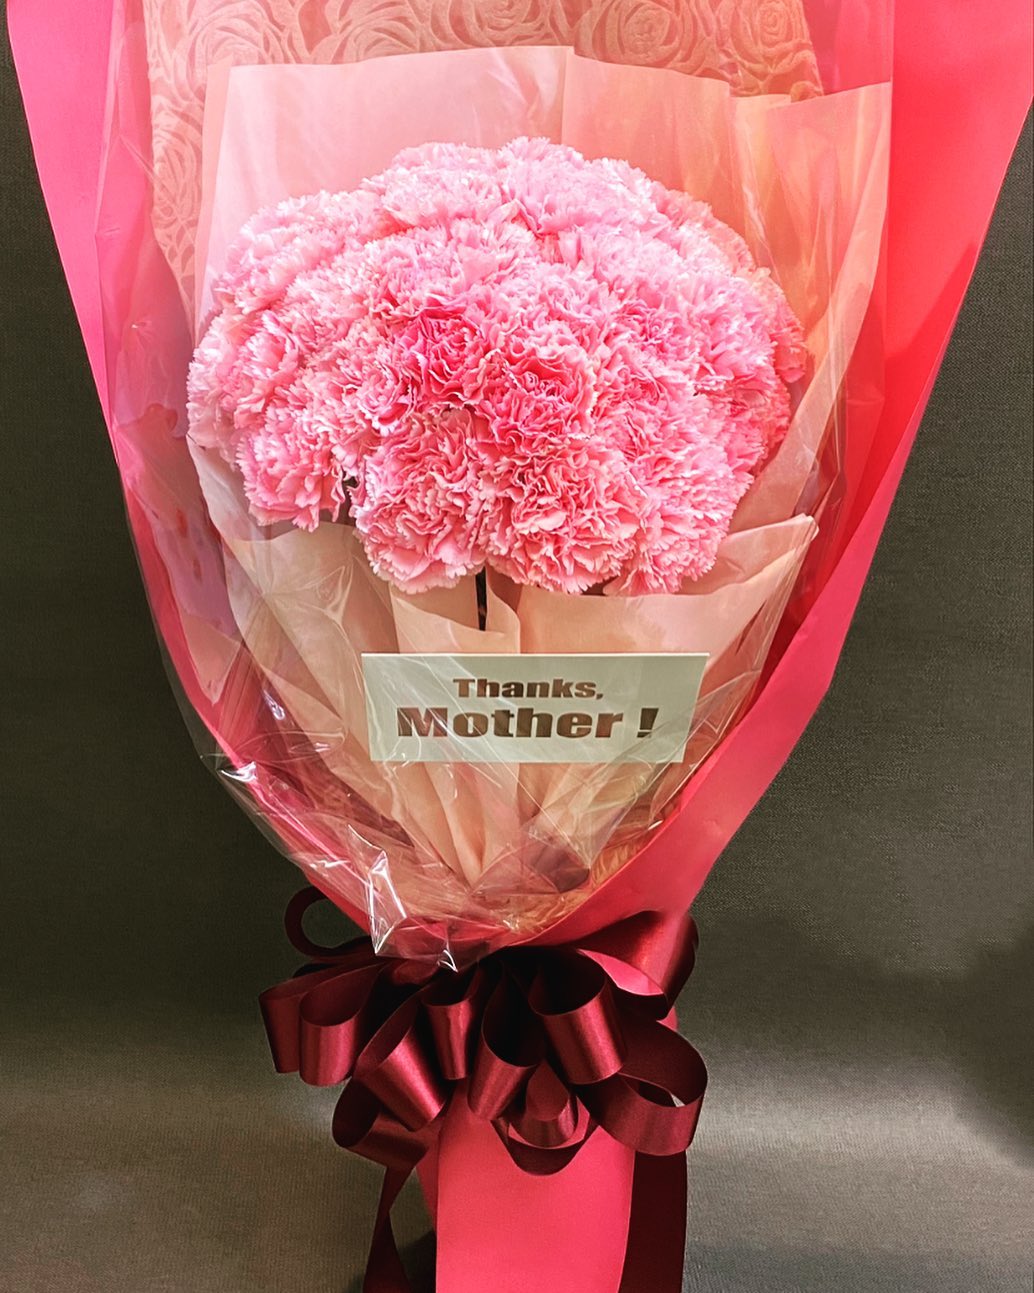 今日は、母の日です日頃の感謝を込めて、お母さんにお花を贈りましょう！岐阜グランドホテル１階、フラワースタジオヒカリカにて、母の日商品をご用意しています！是非お立ち寄りください営業時間は、9時〜17時です‍♂️